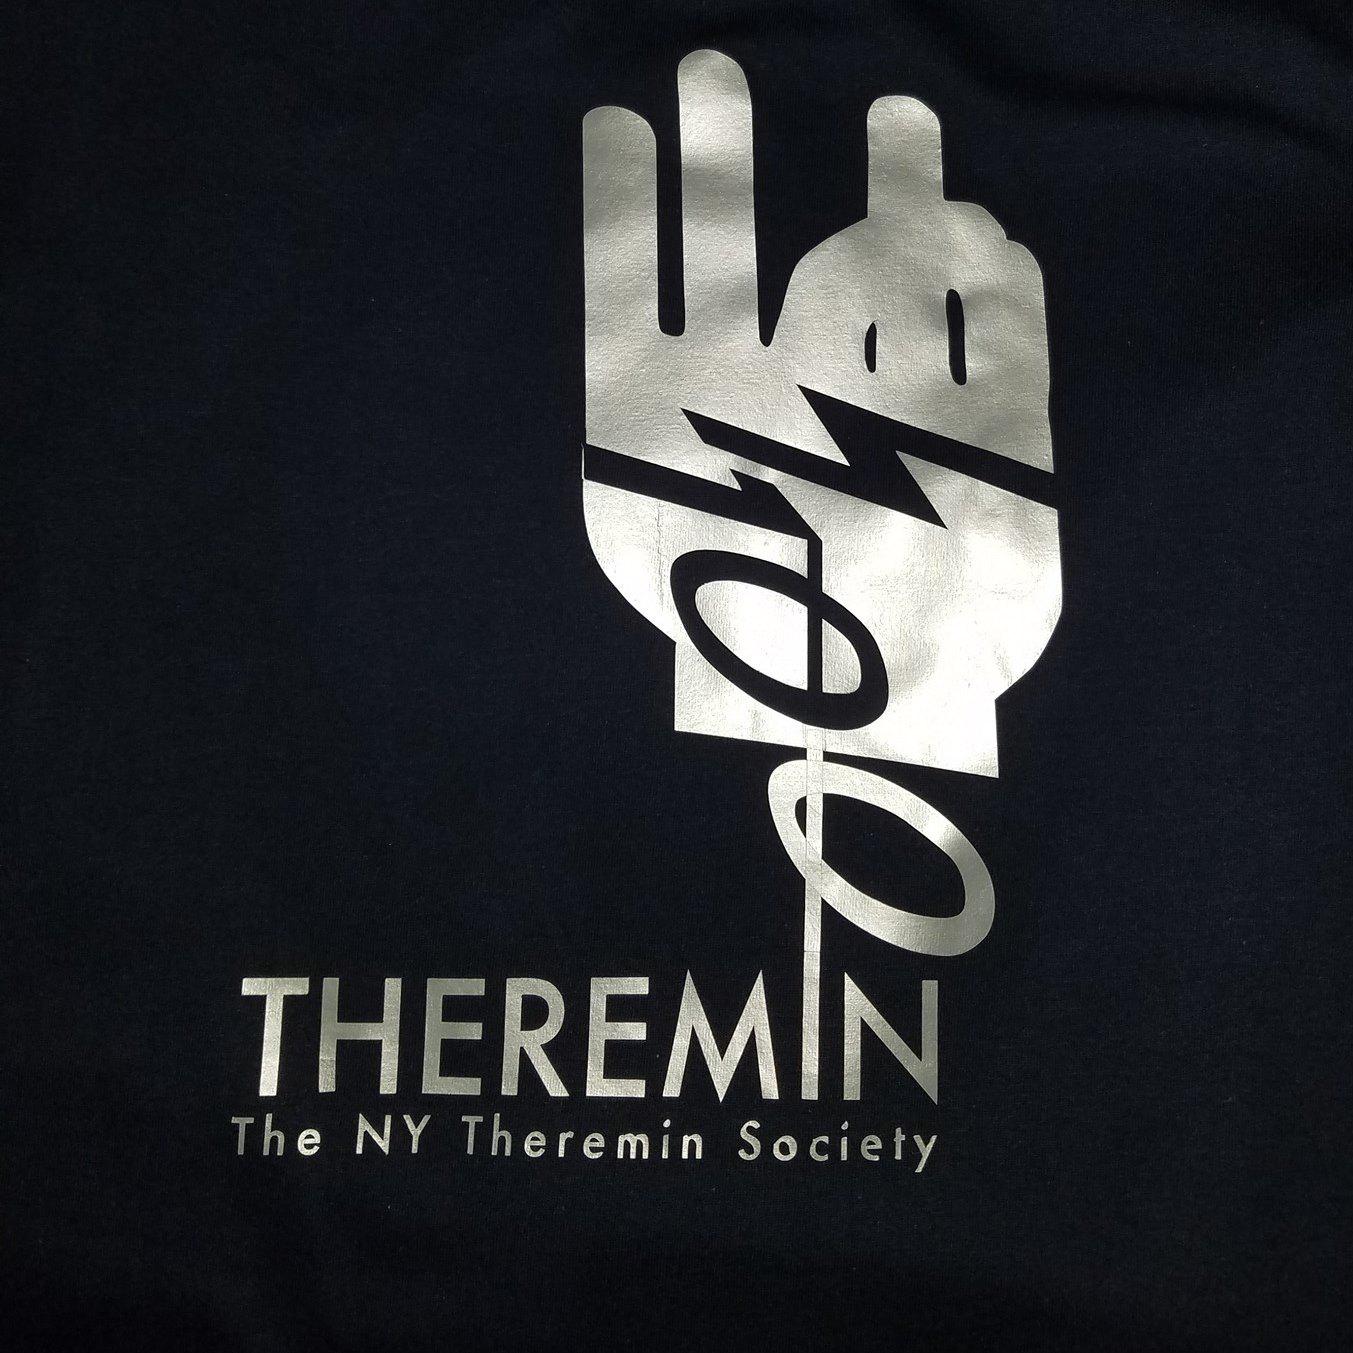 The NY Theremin Society